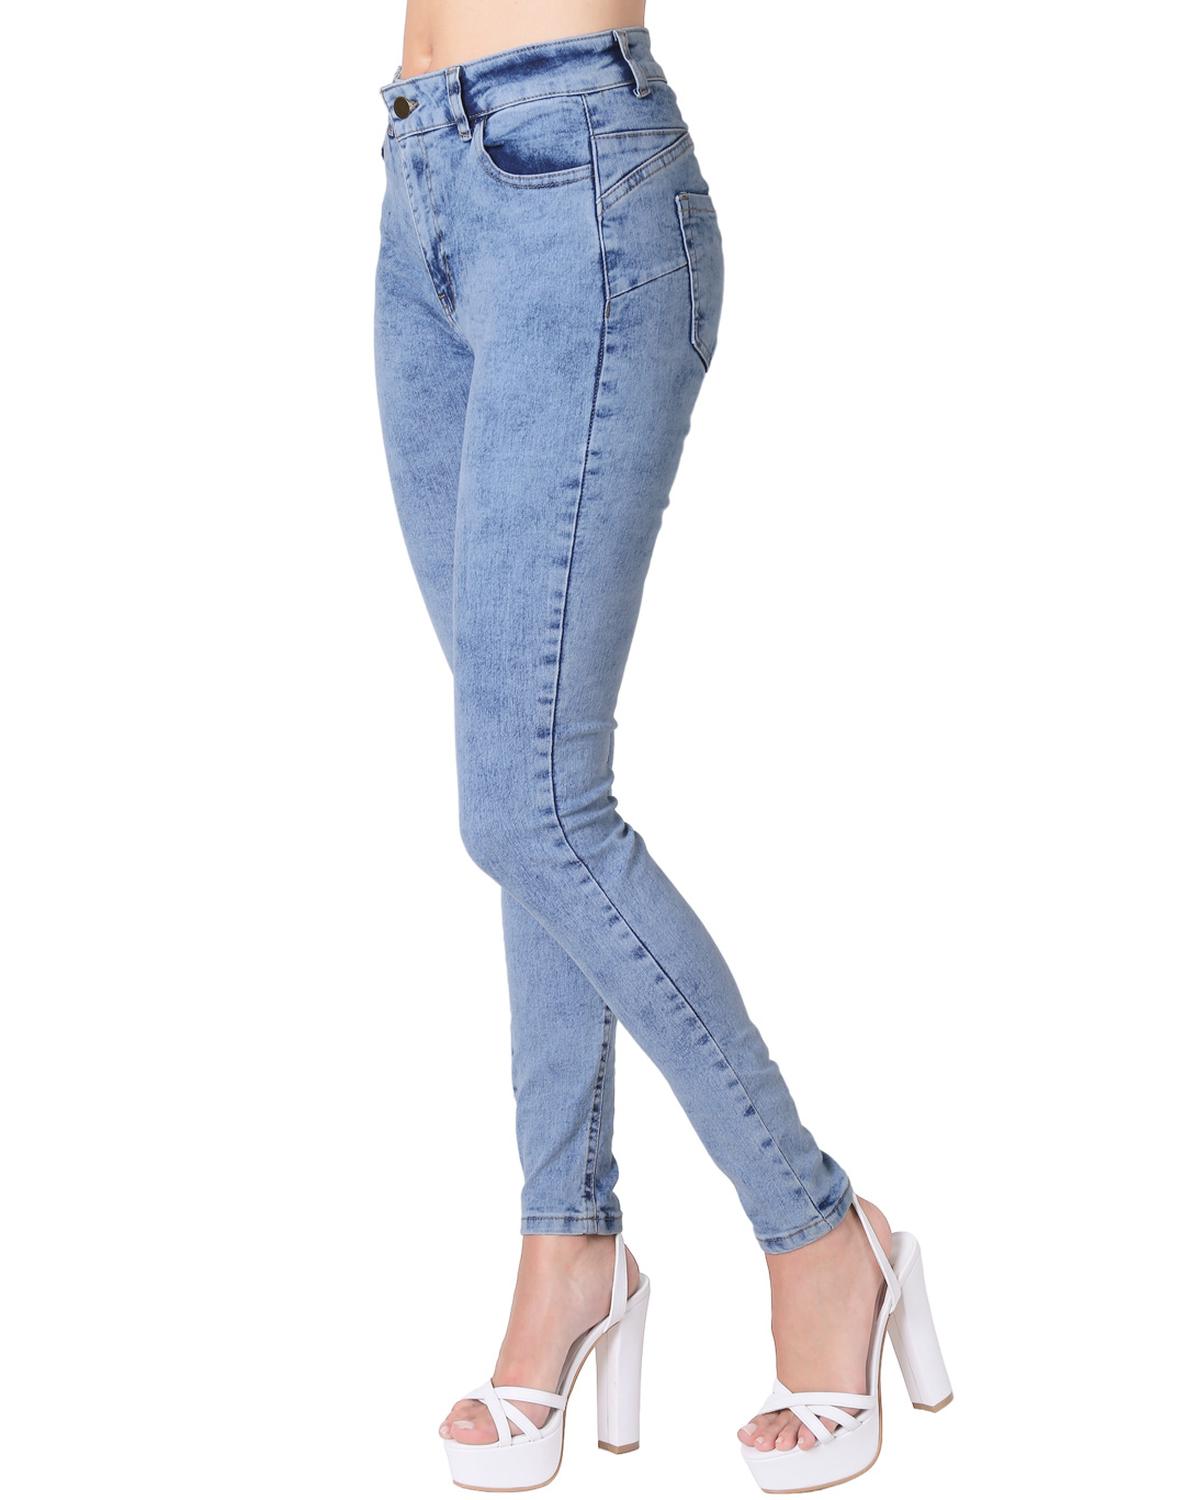 Jeans Moda Skinny Mujer Azul Stfashion 63104612